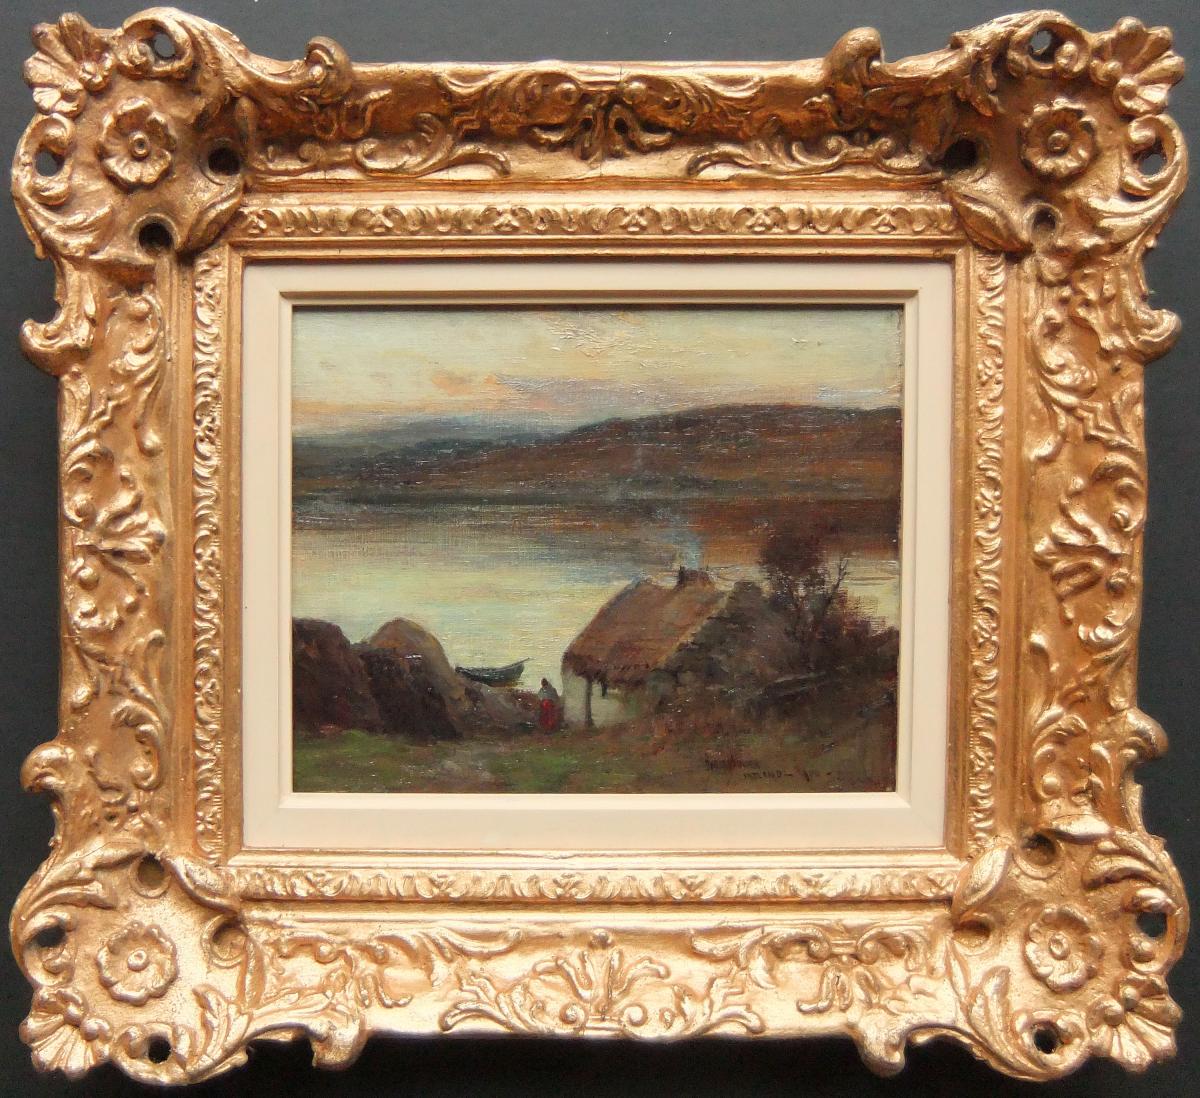 Owen Bowen "Ireland, 1900" oil on panel